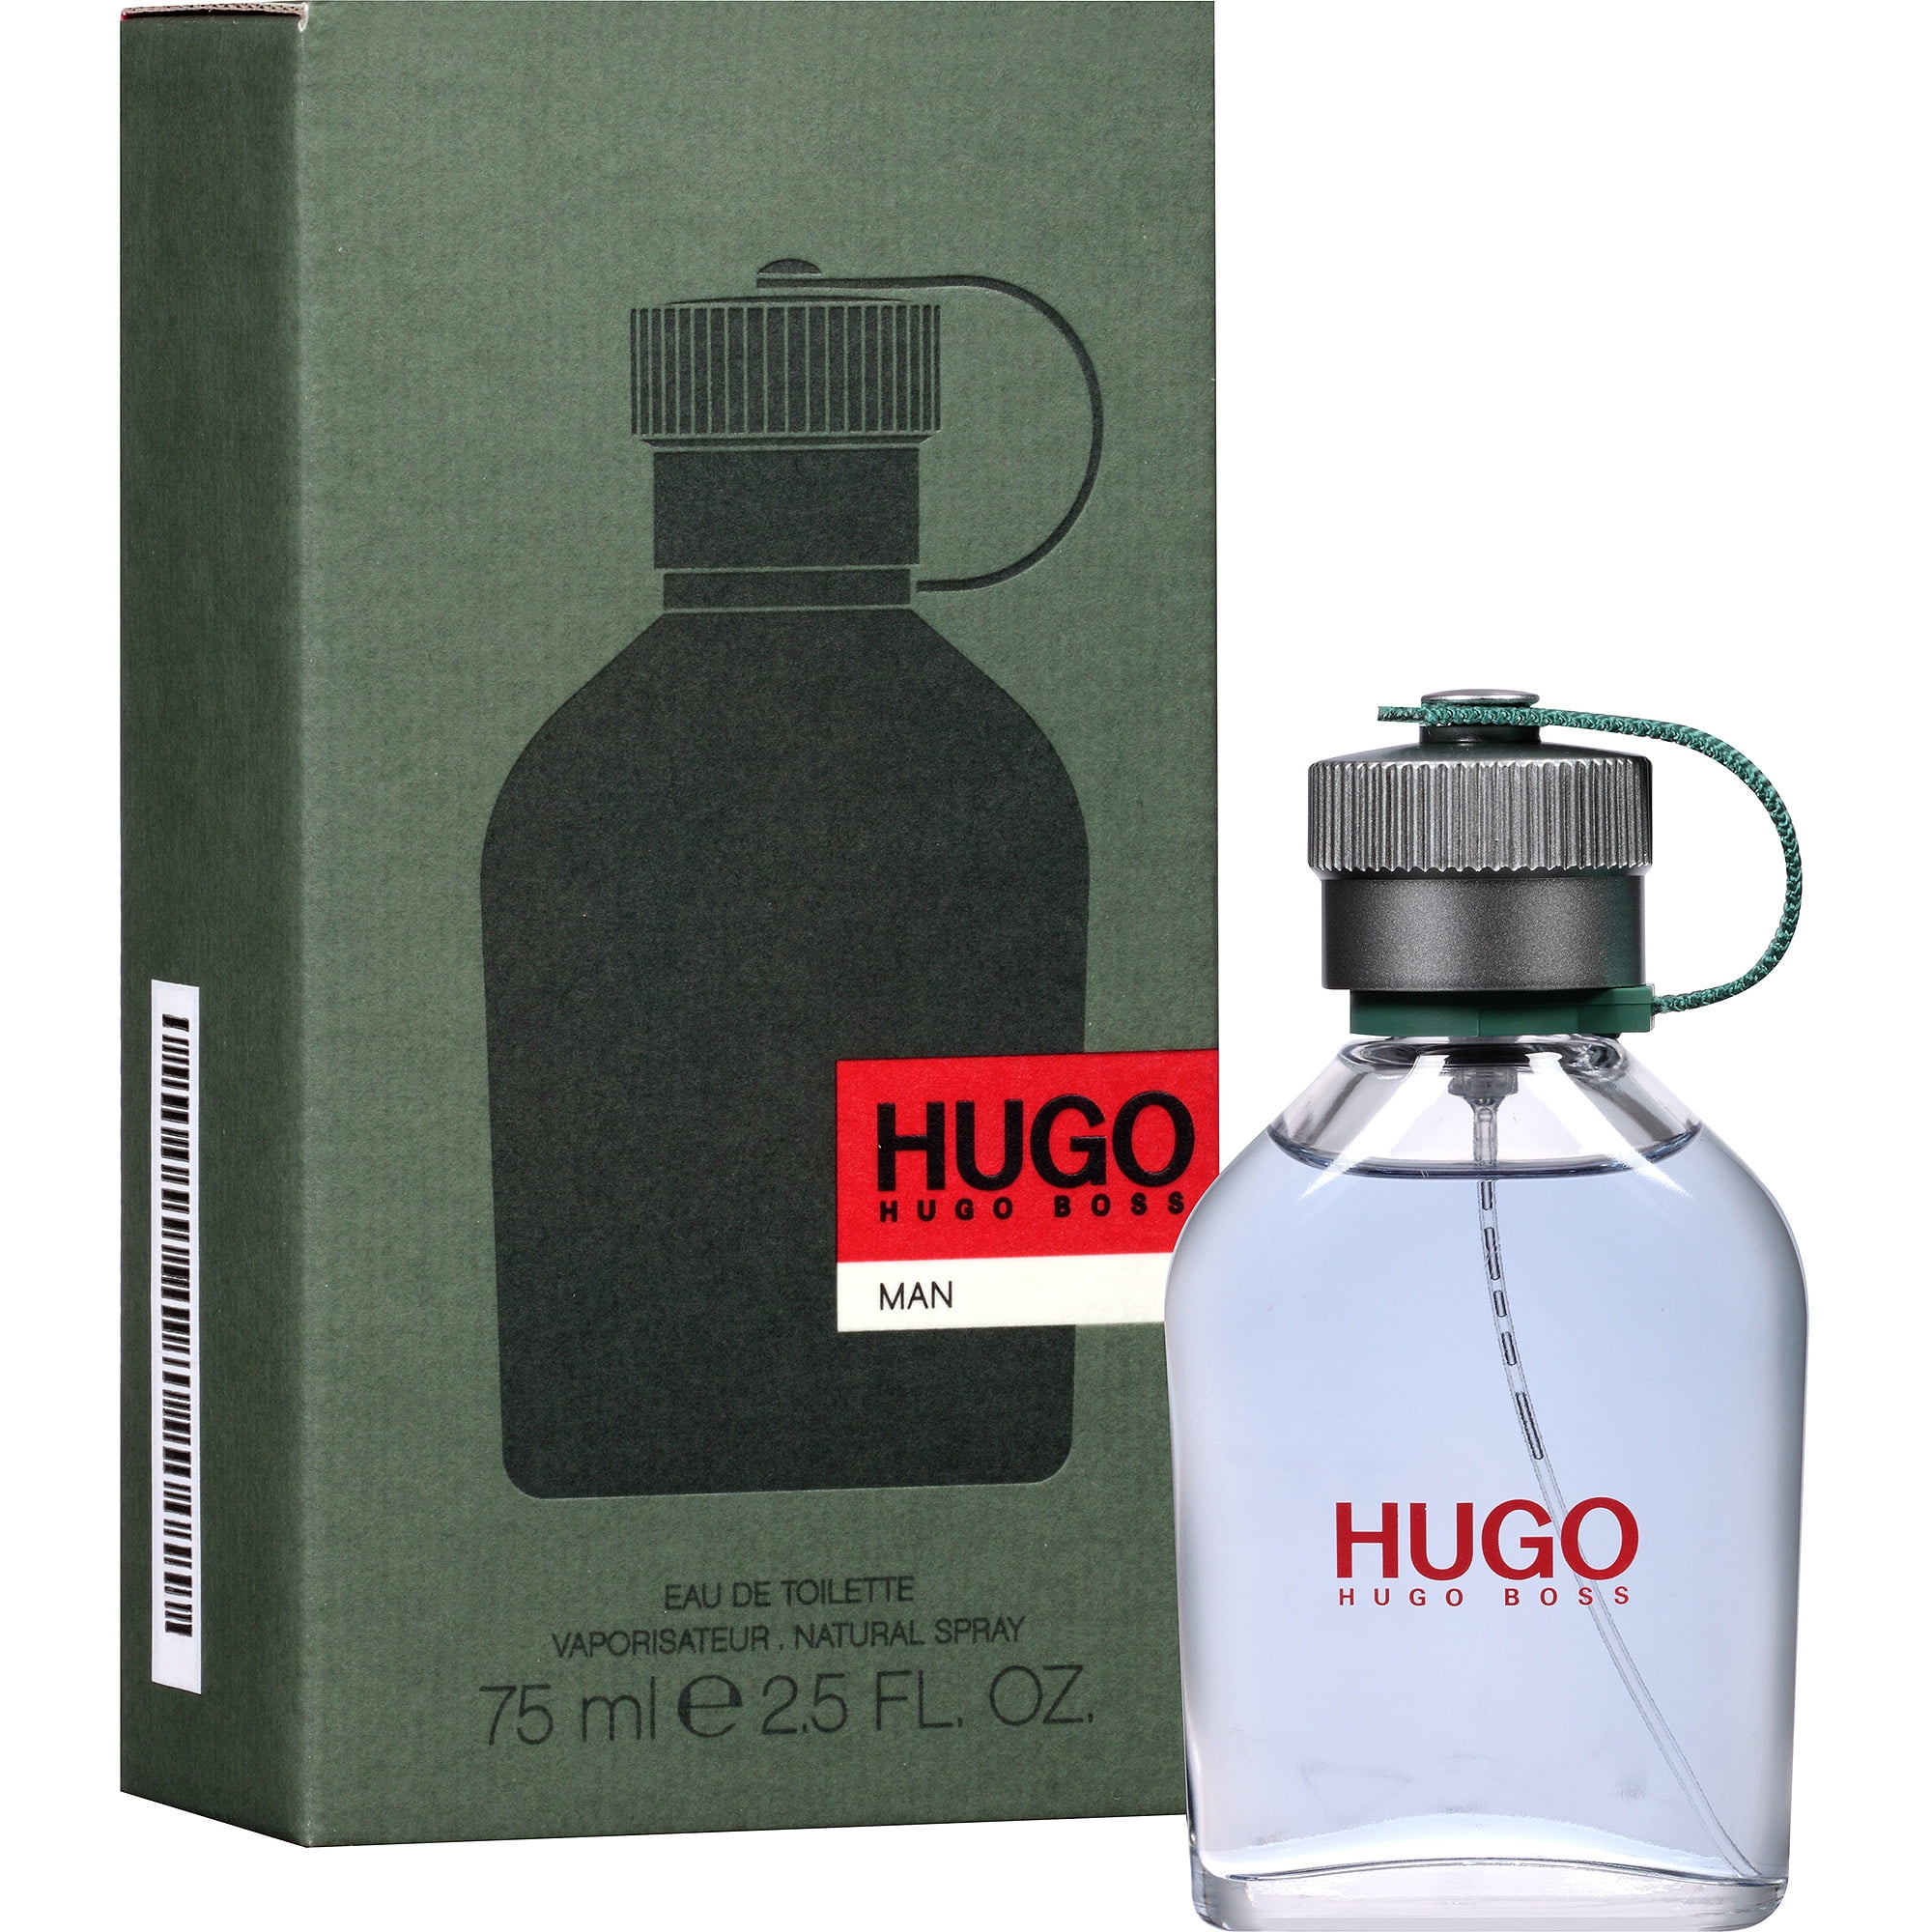 Macys Hugo Boss Cologne | vlr.eng.br